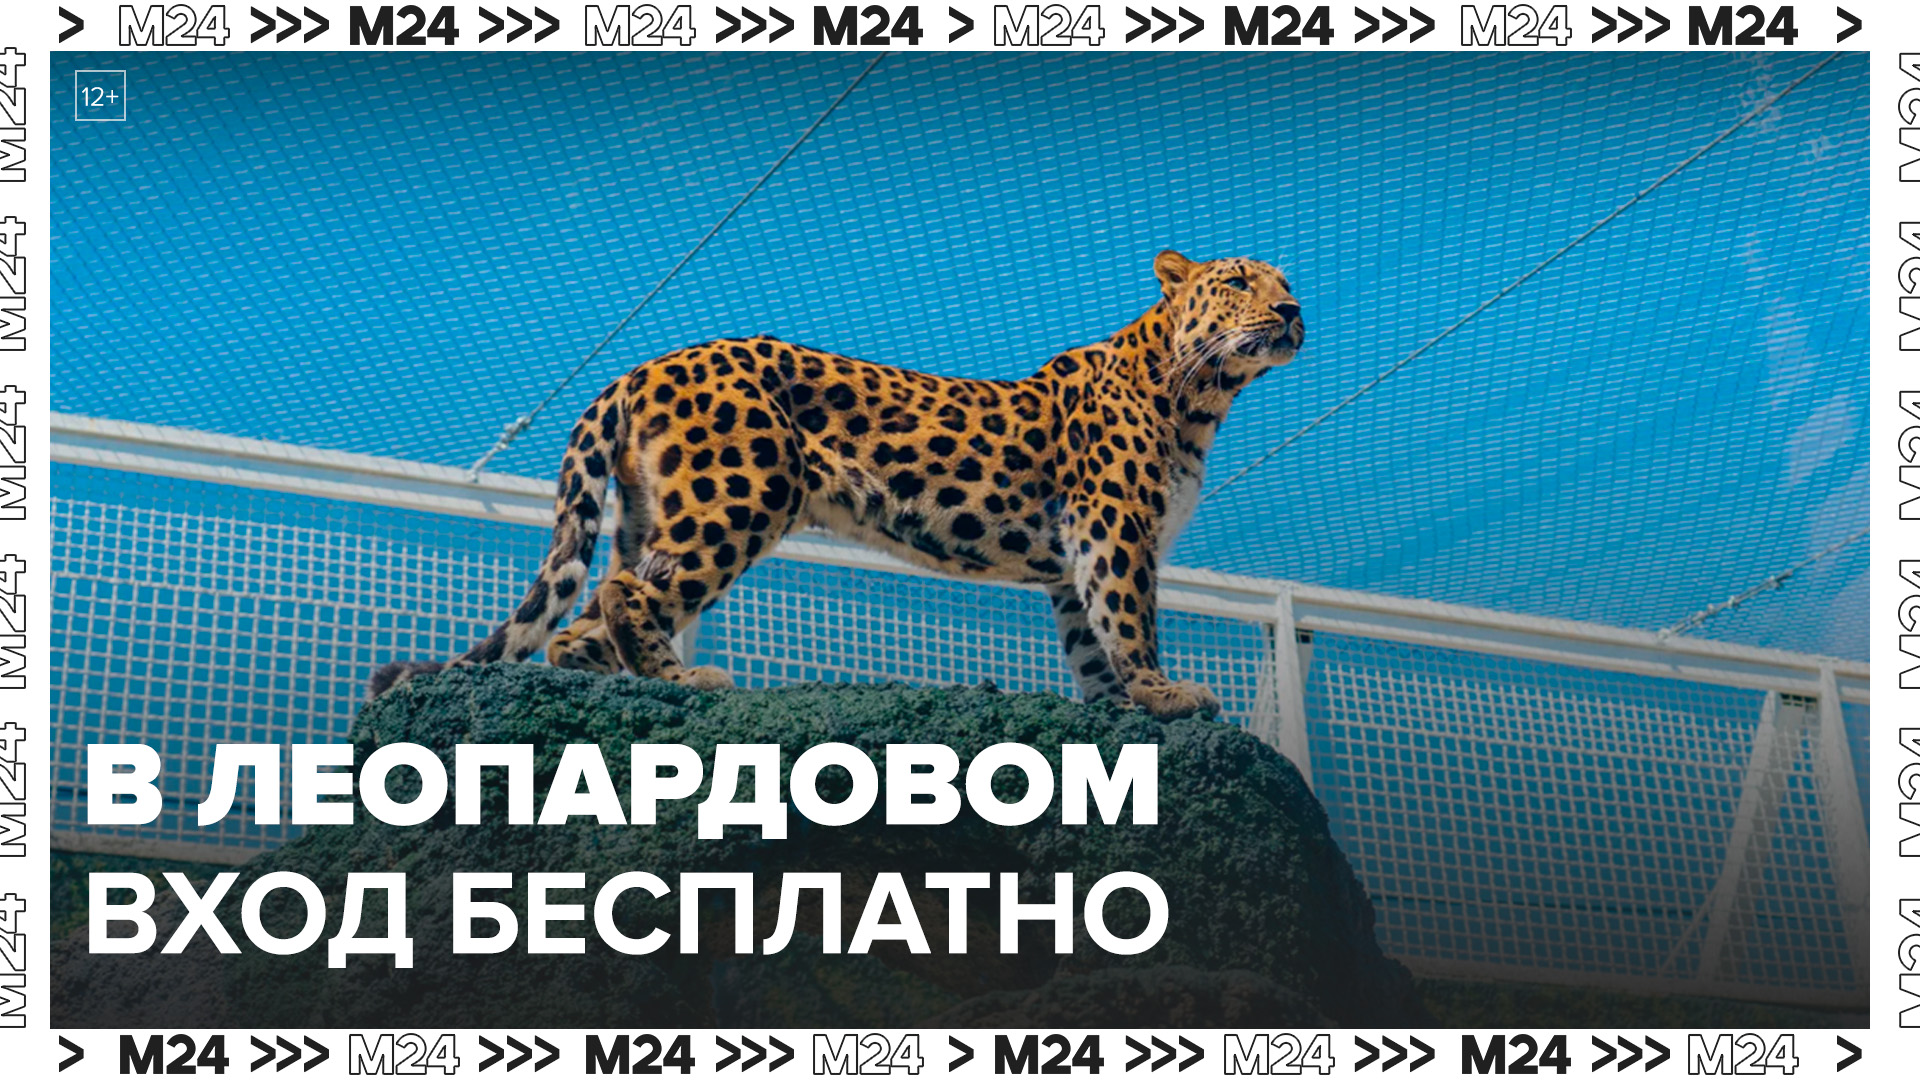 Женщины в "леопардовой" одежде смогут посетить Московский зоопарк бесплатно 8–10 марта - Москва 24